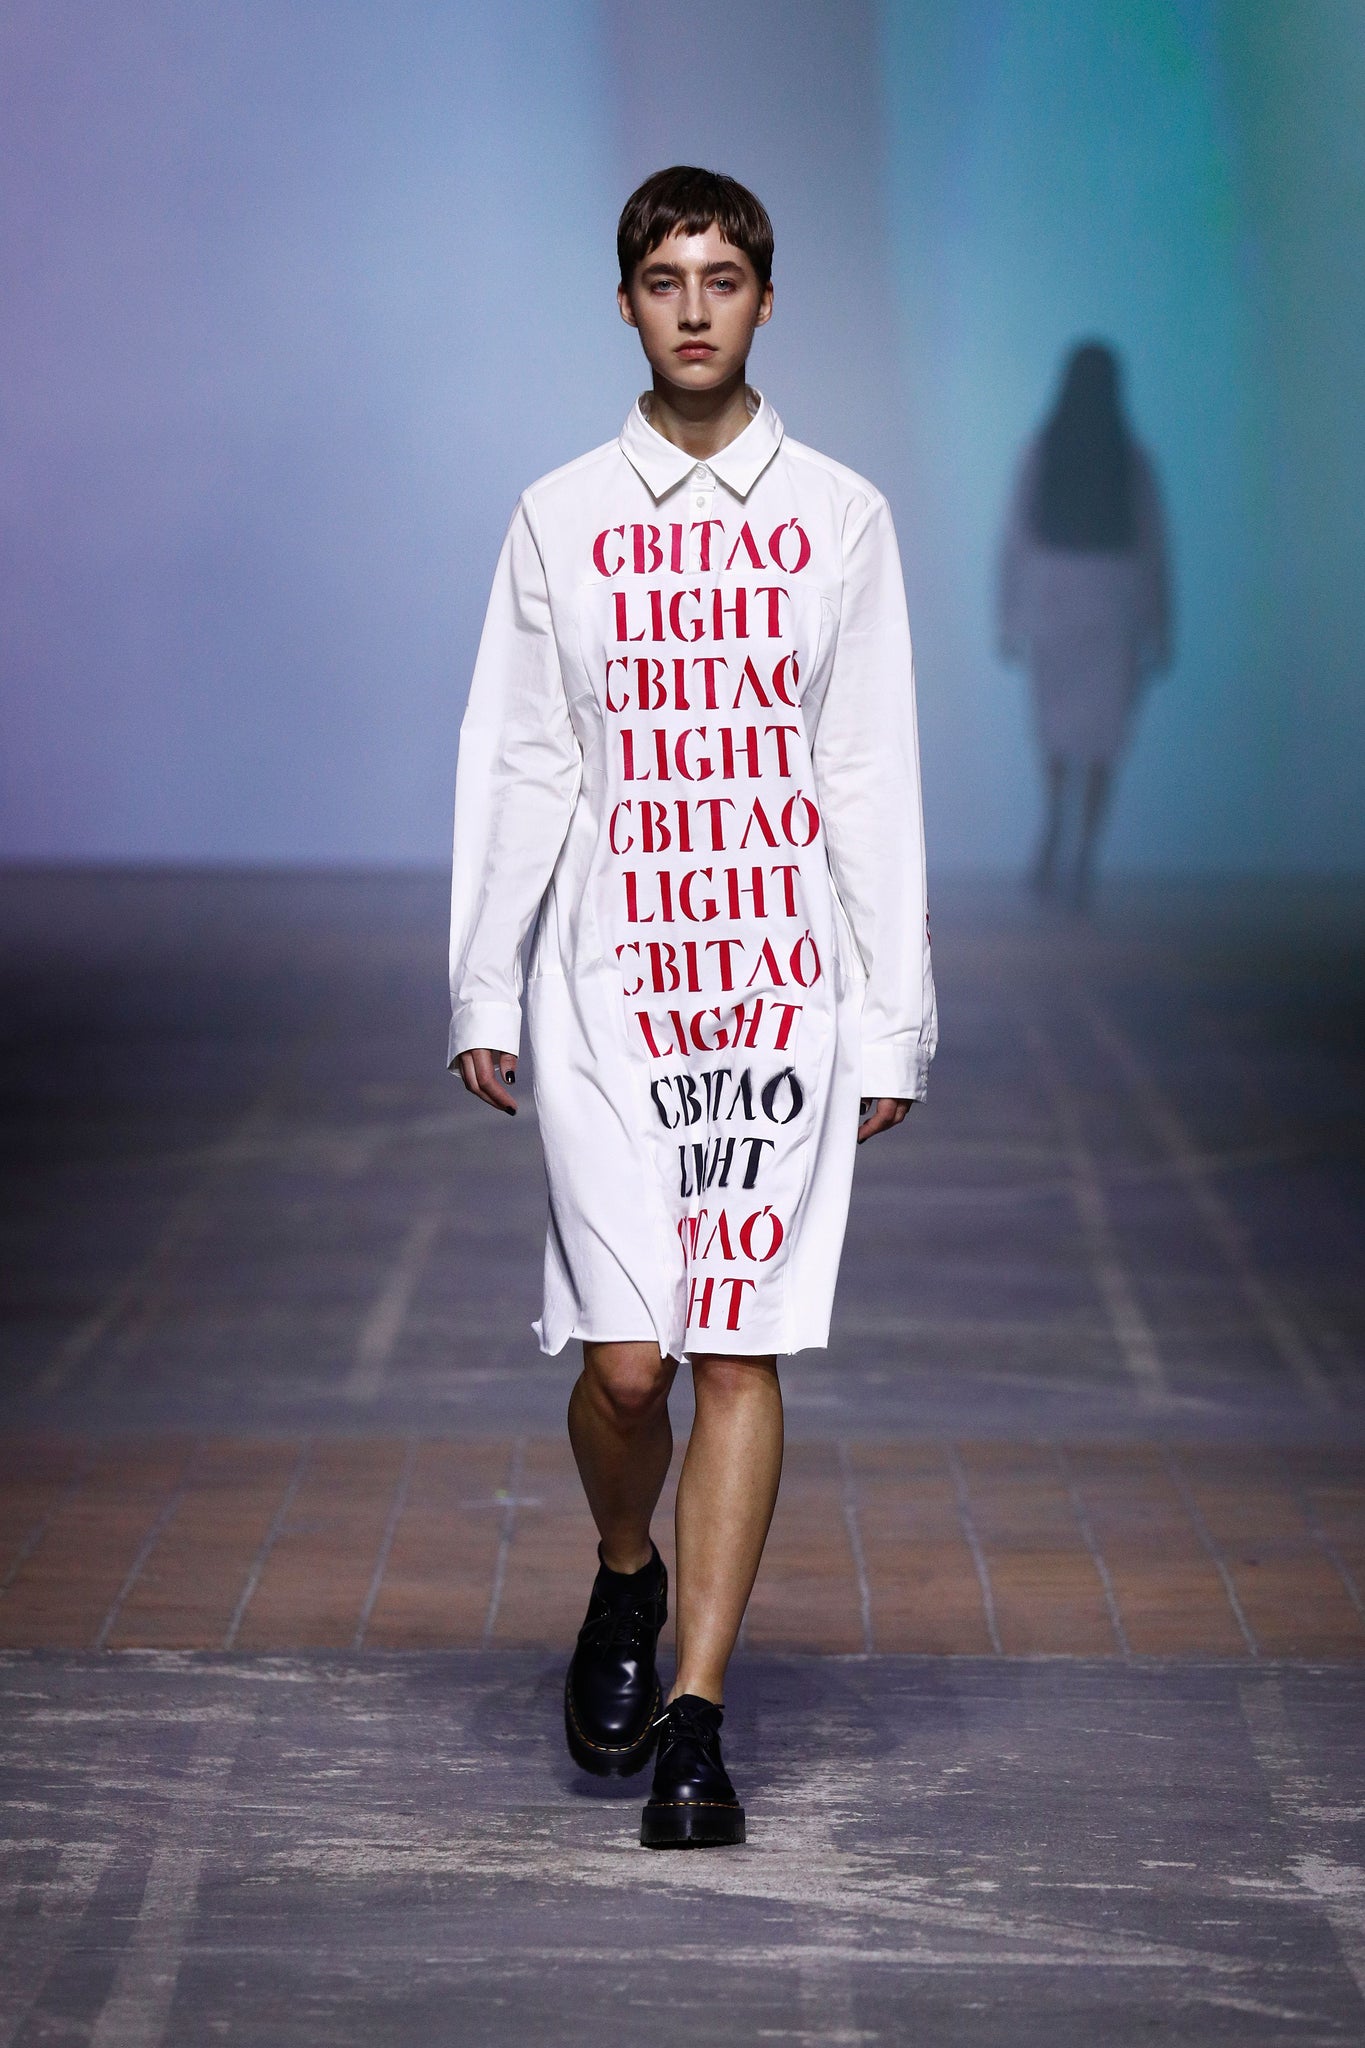 Light Shirt/Dress